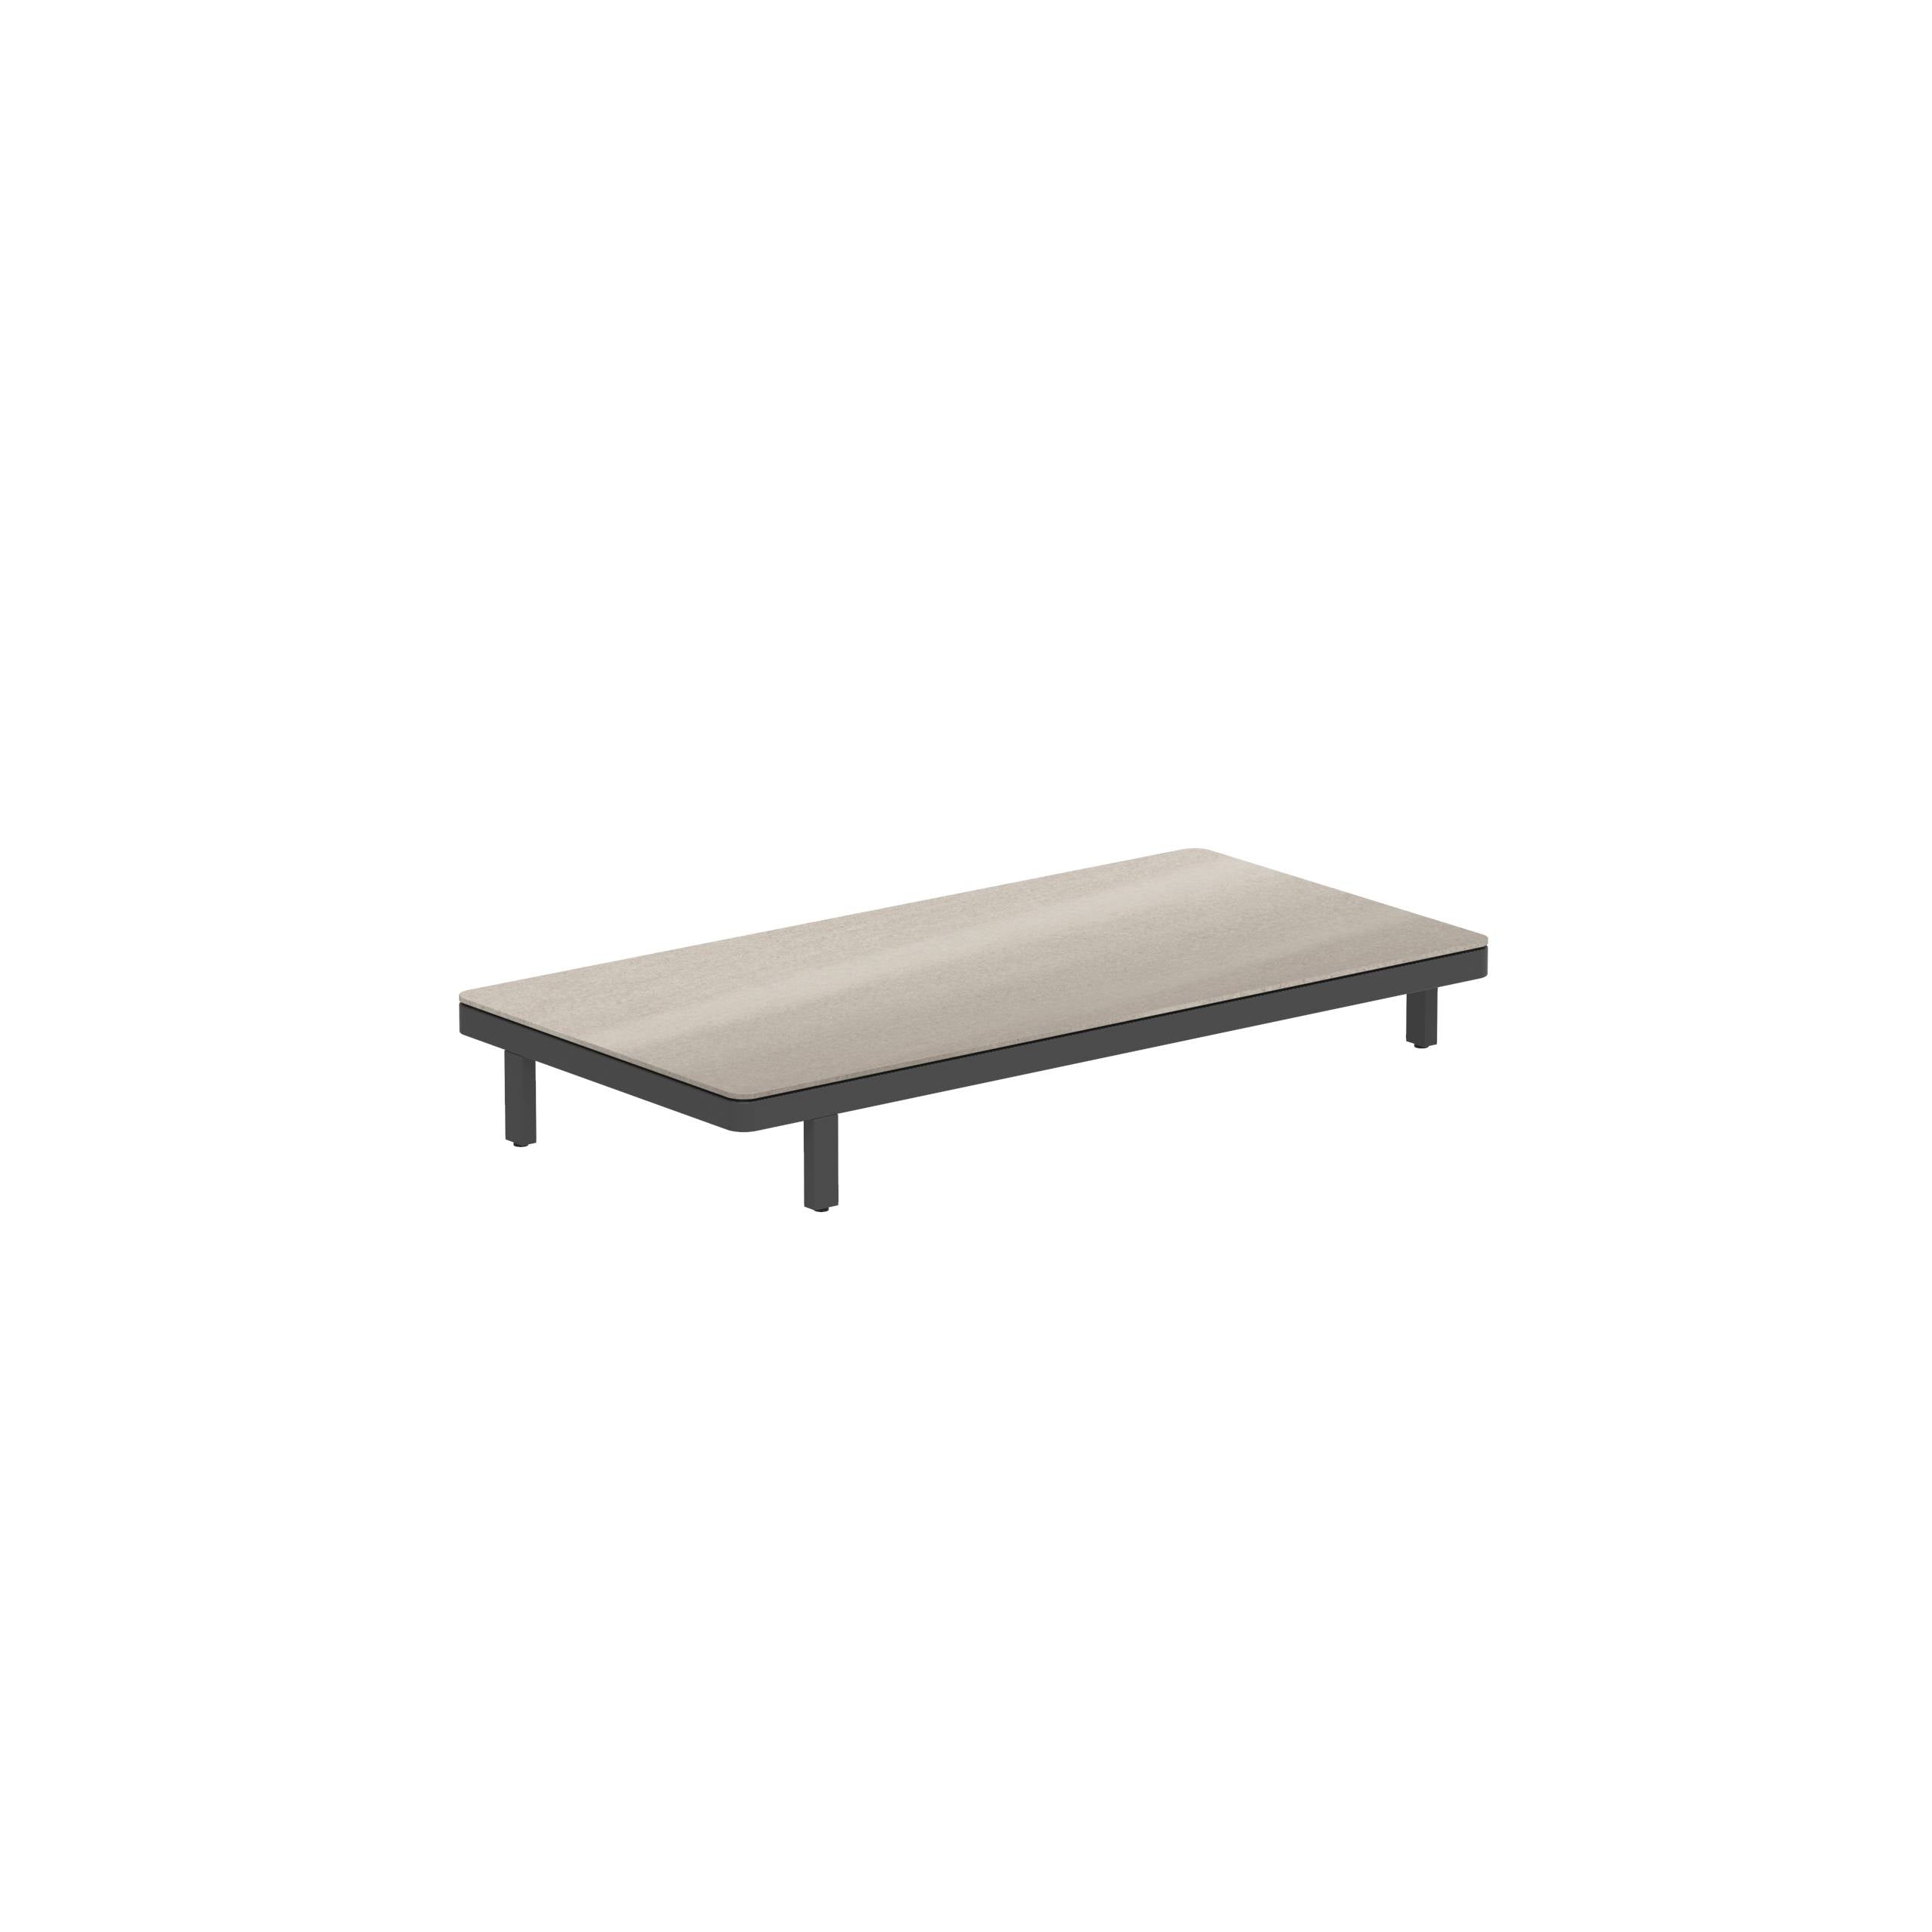 Alura Lounge 160 Ltl Table 160x80x23cm Black Ceramic Tabletop Taupe Grey